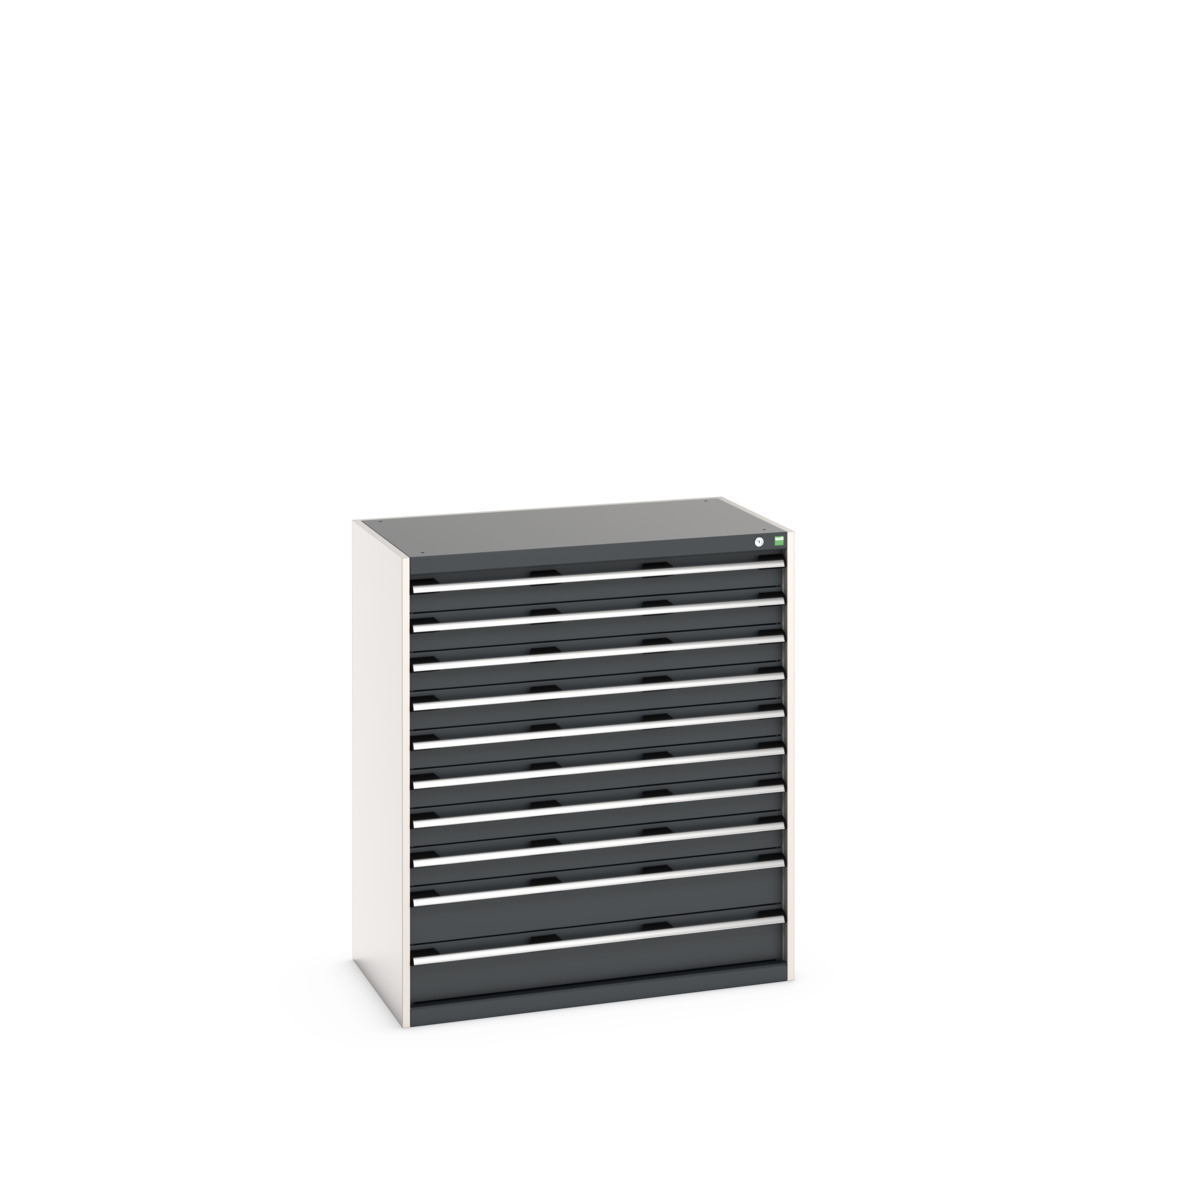 40021042.19V - cubio drawer cabinet